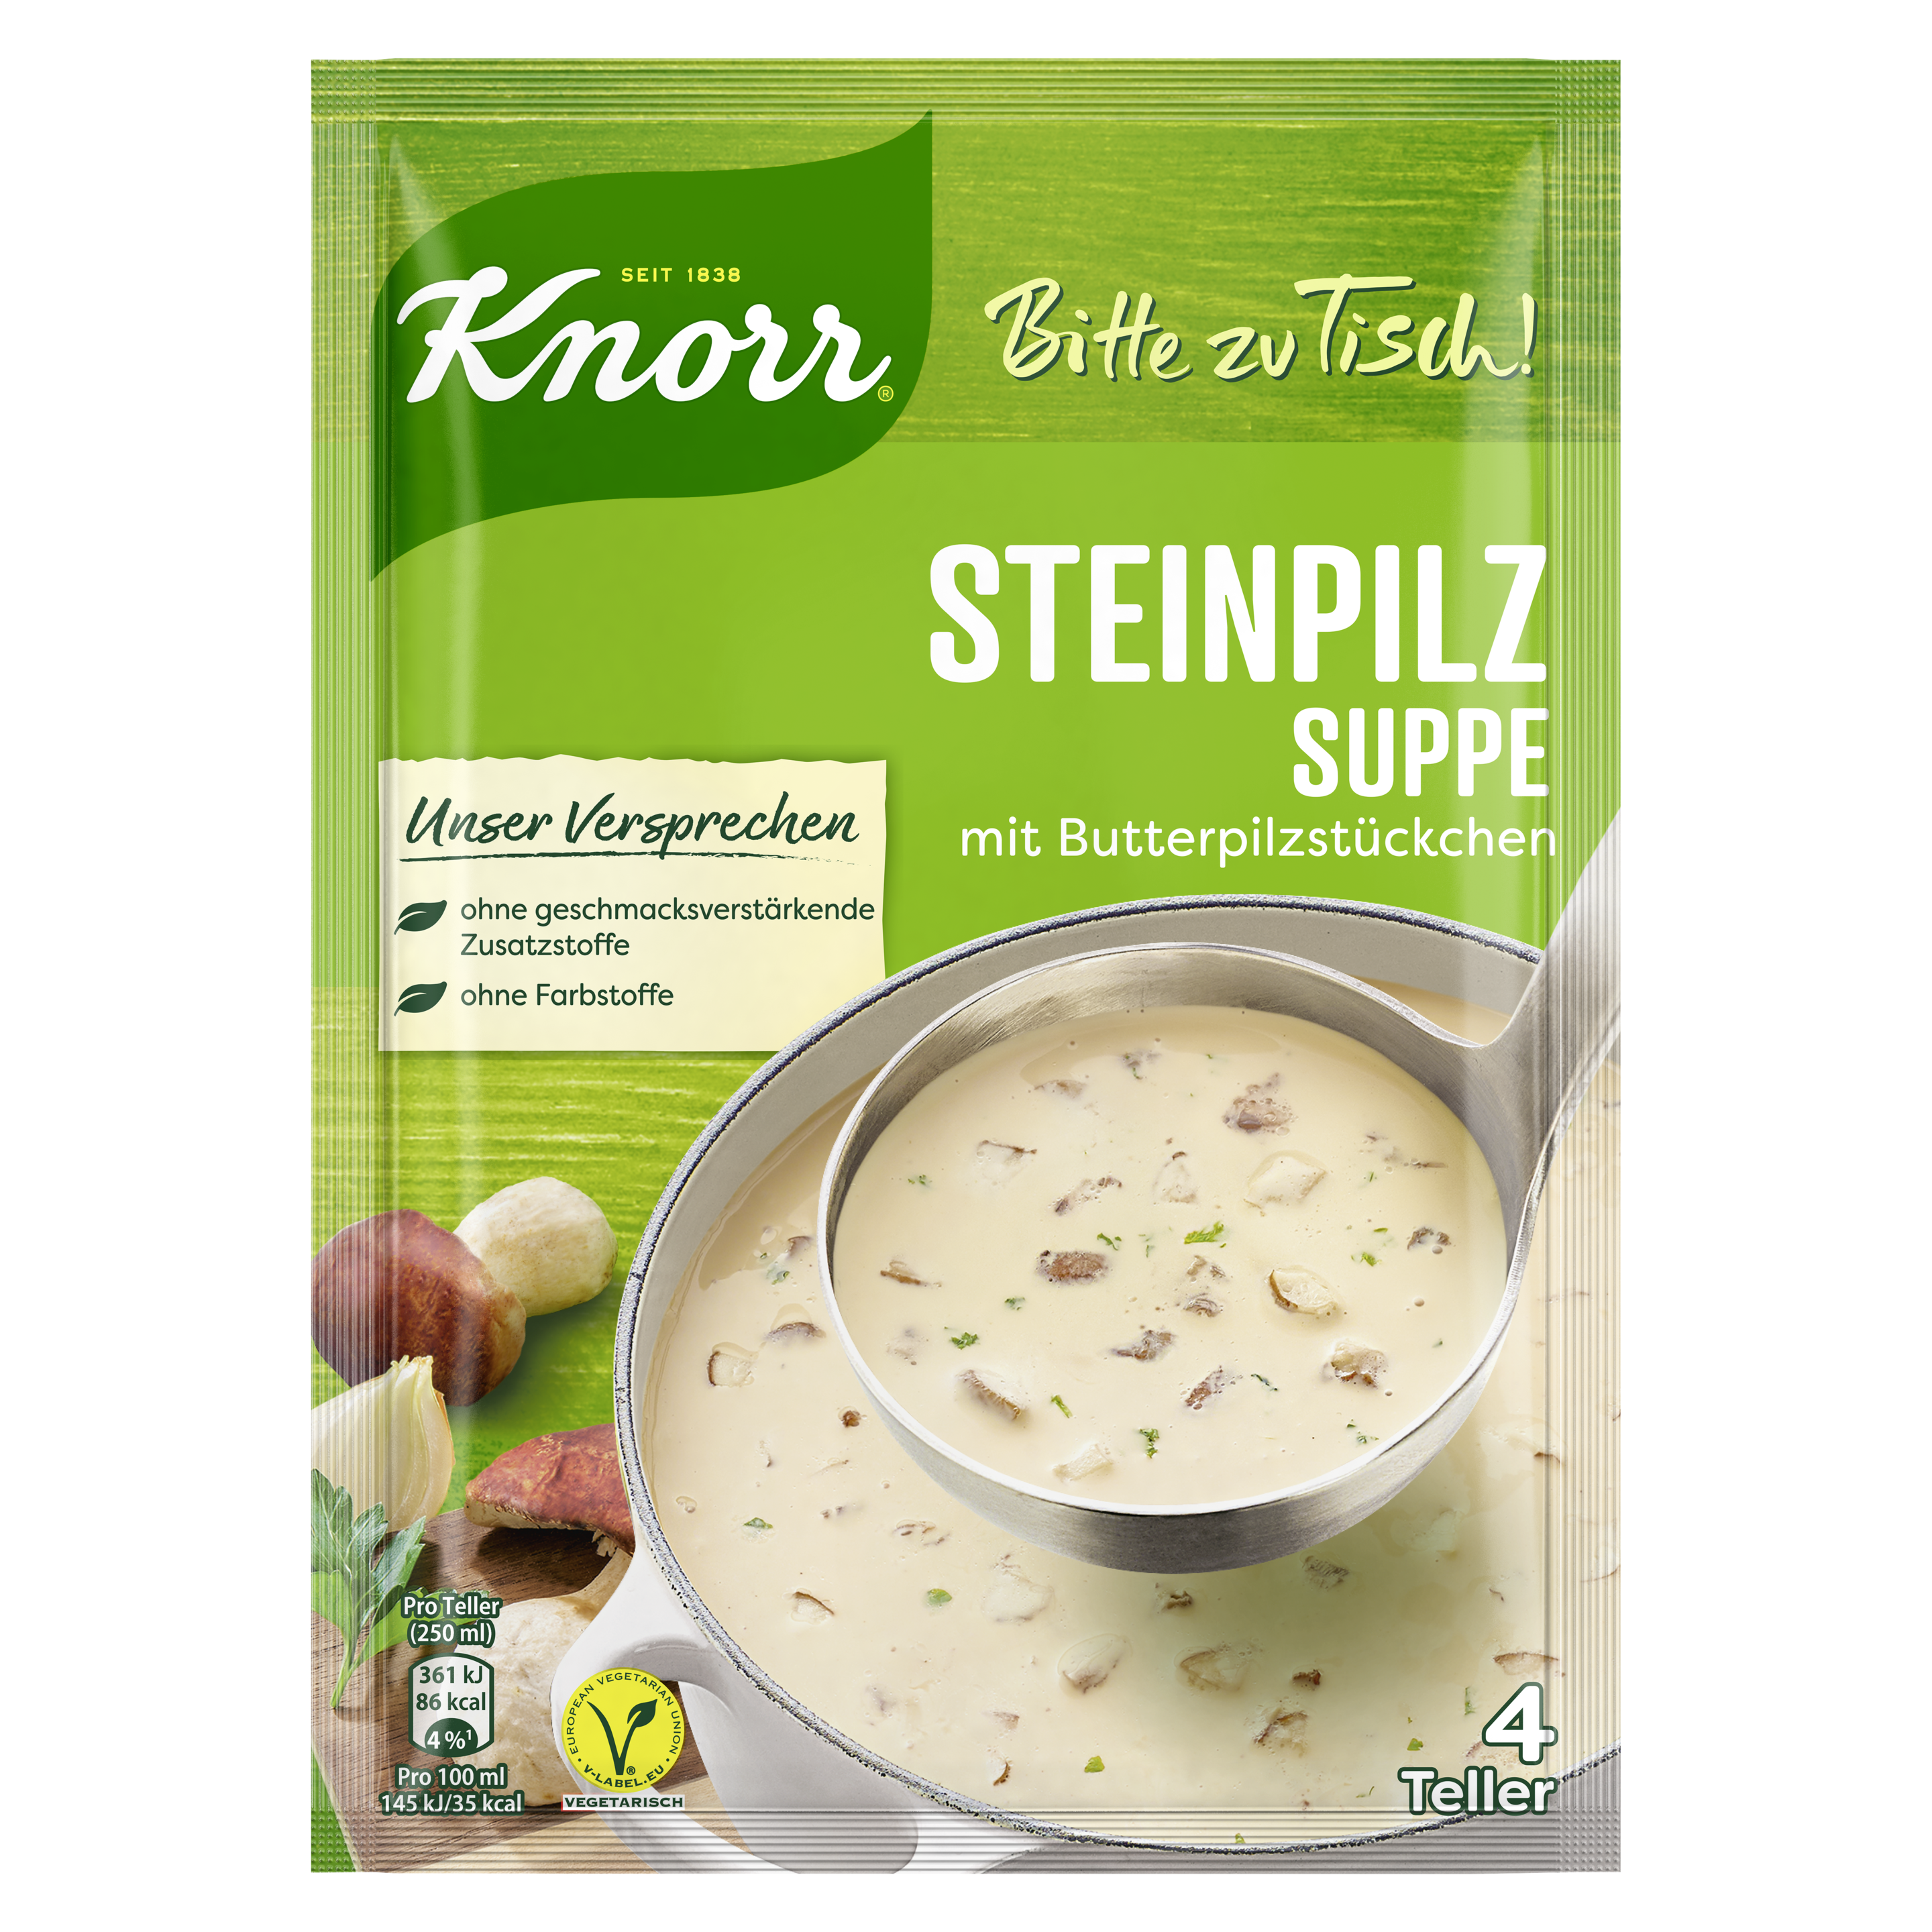 Knorr Bitte zu Tisch! Steinpilz Suppe 4 Teller